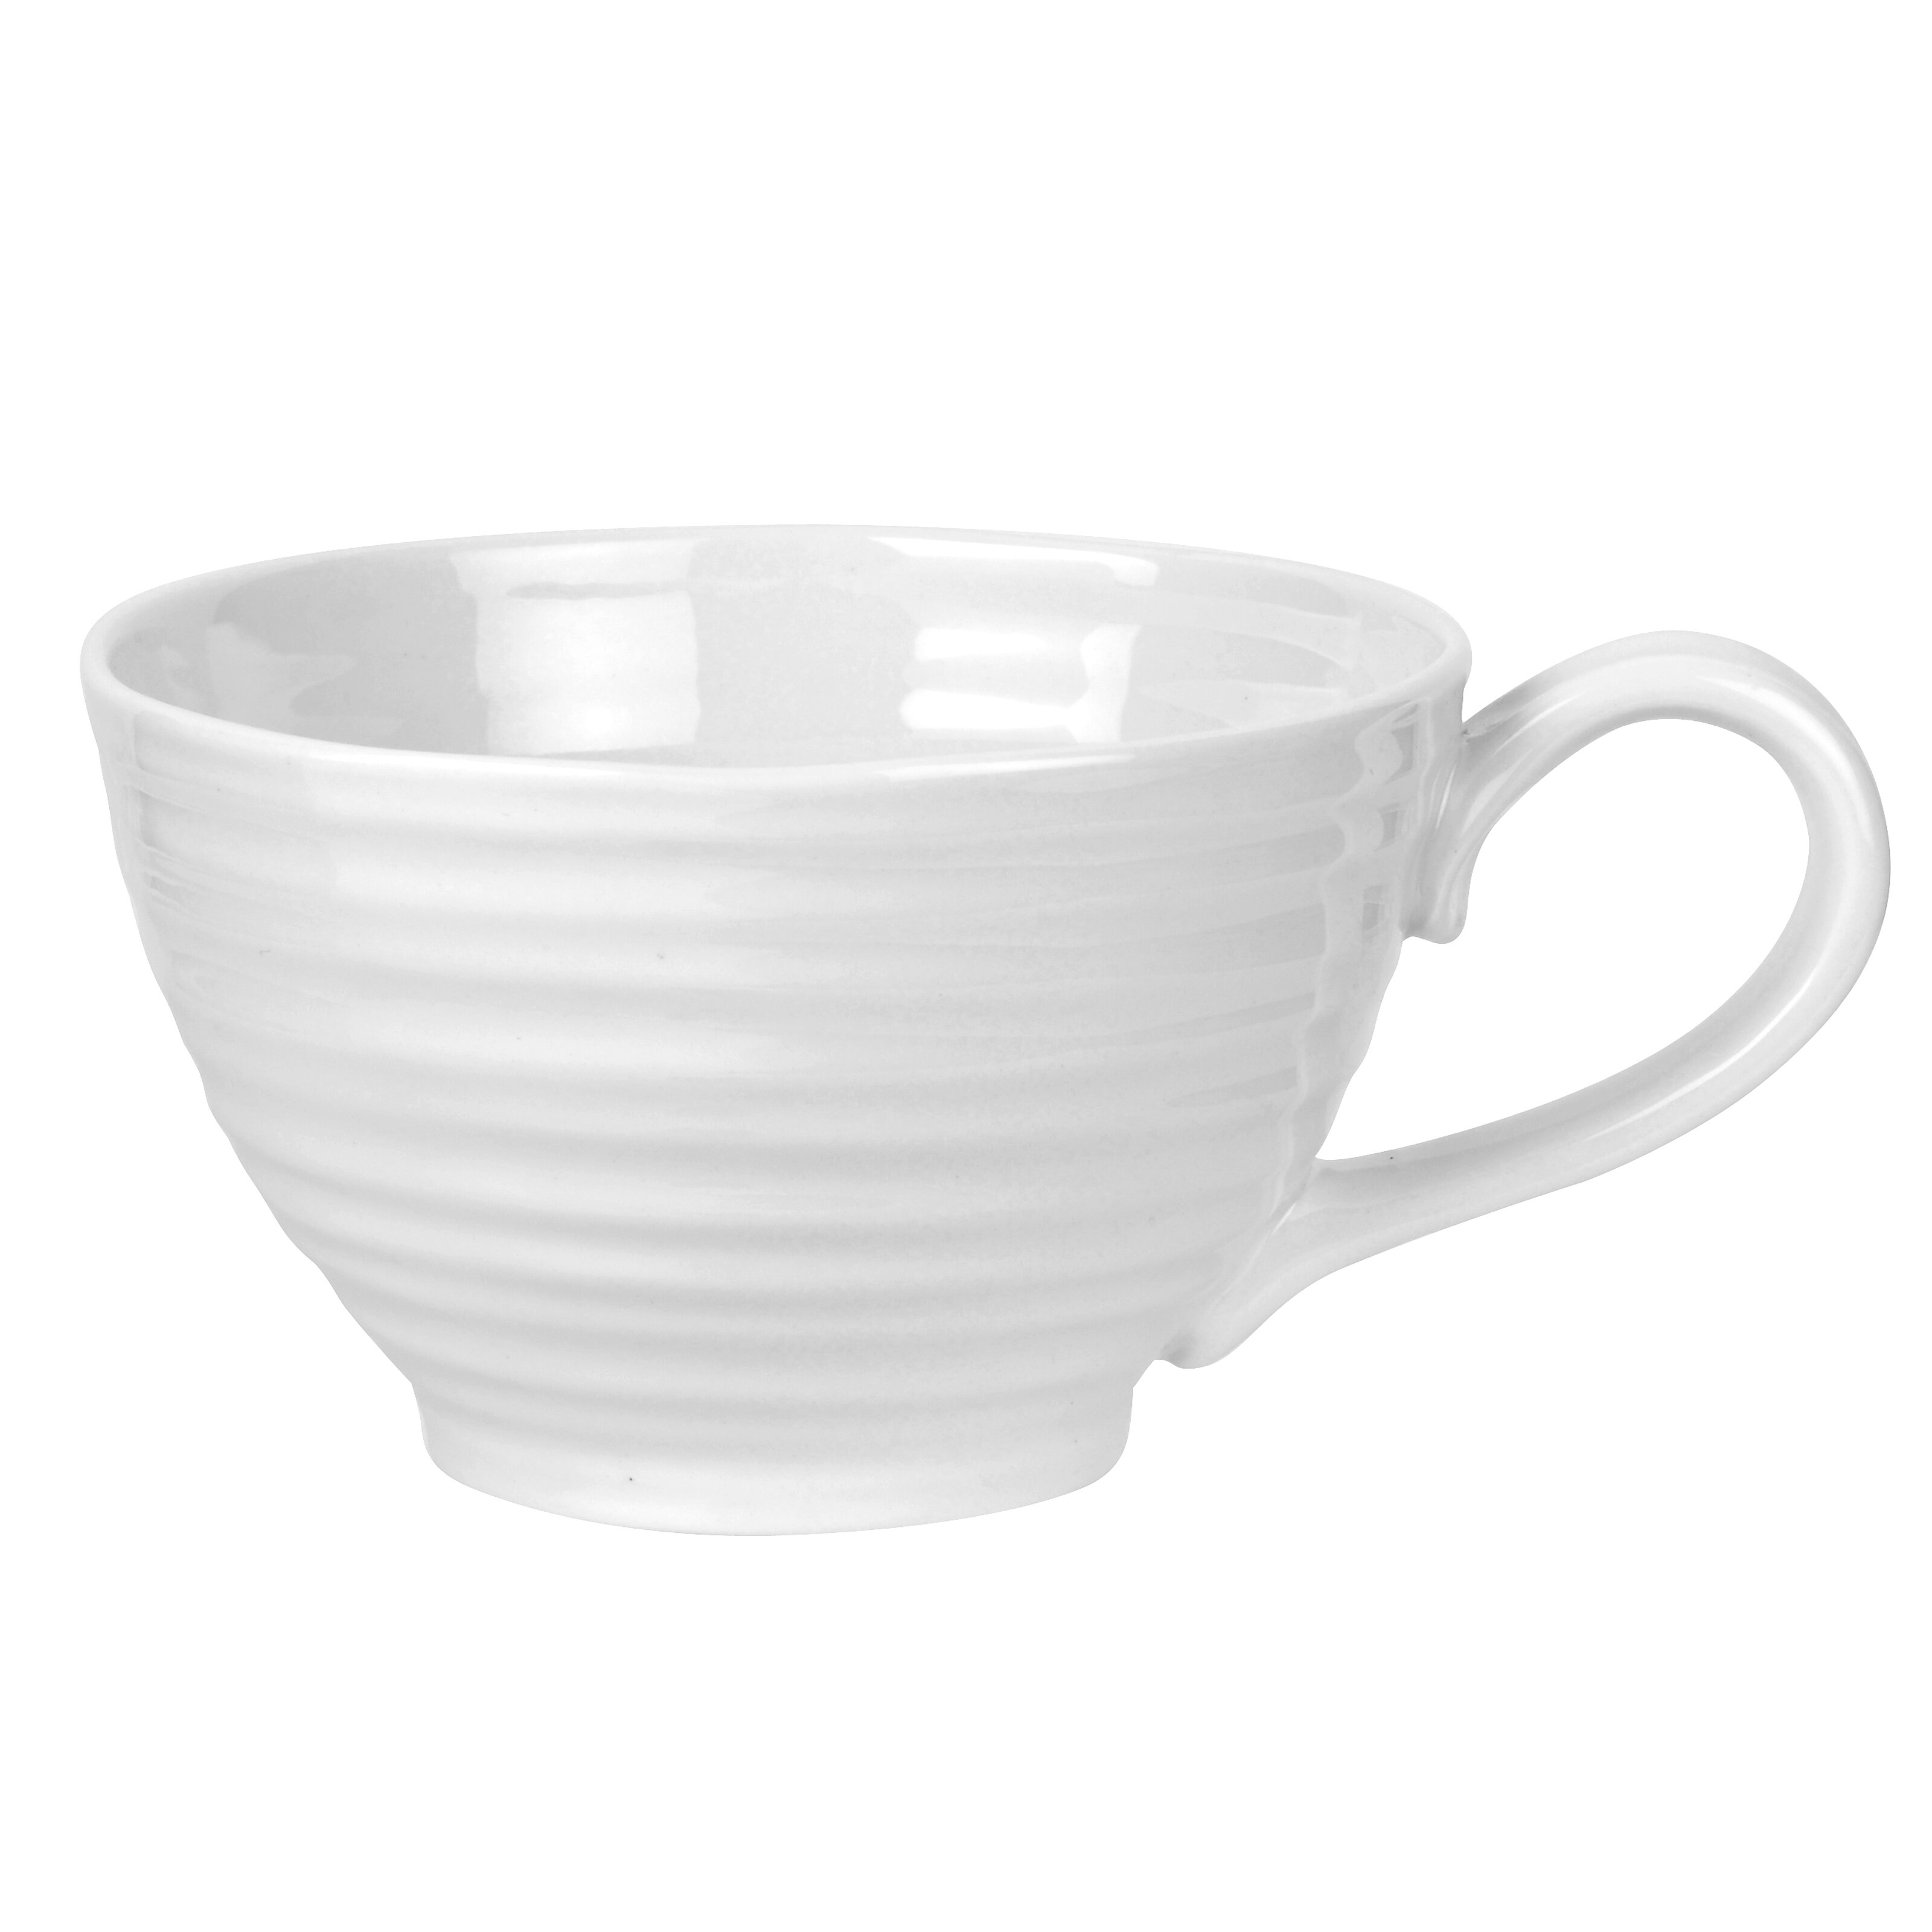 Sophie Conran for Portmeirion Mug Porcelain 10.5 x 14 x 11 cm White 